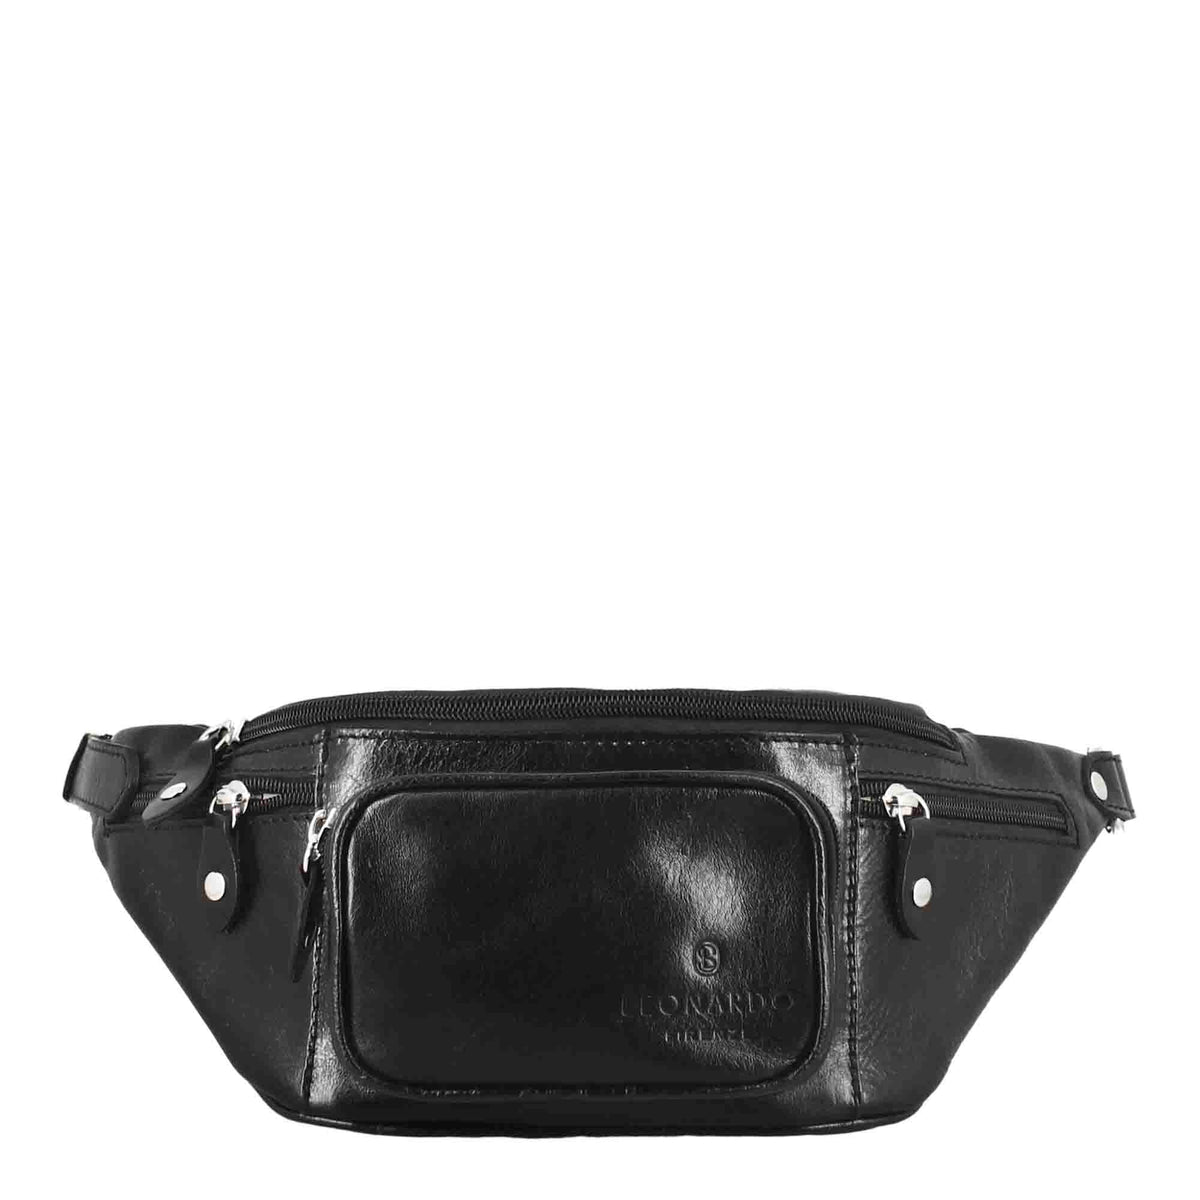 Classic men's bum bag in black multi-pocket leather